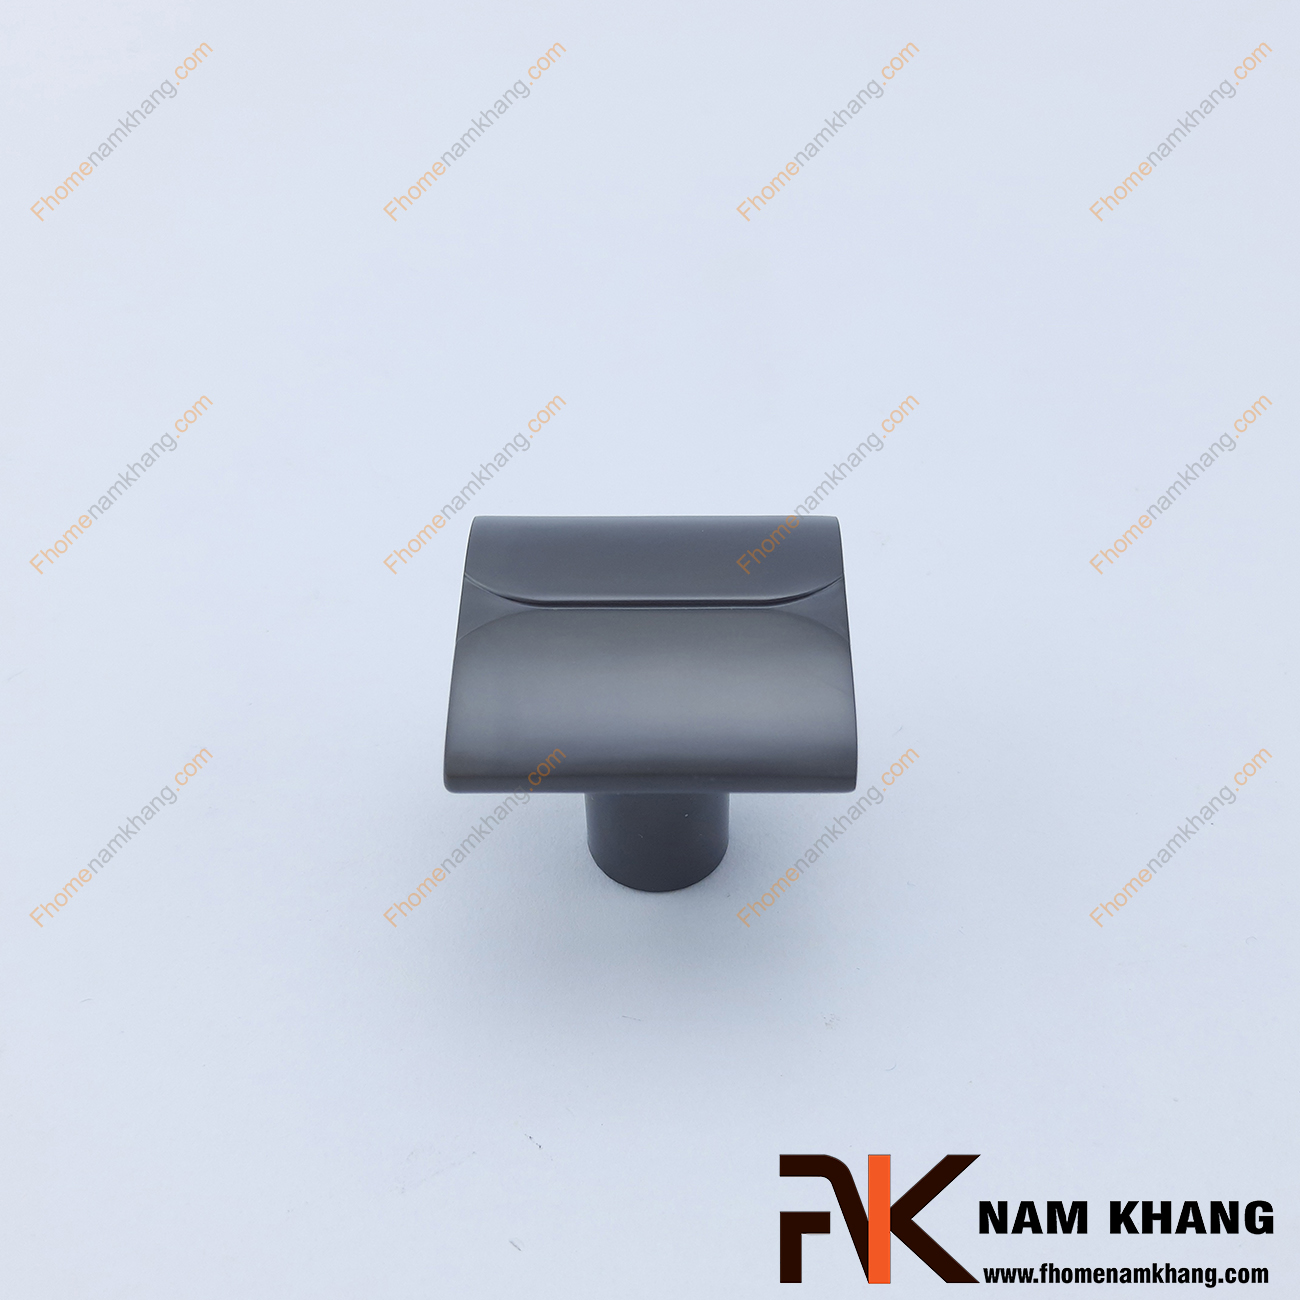 Núm cửa tủ màu ghi xám NK417-G có thiết kế đơn giản từ hợp kim cao cấp với khuôn dạng vuông và đế tròn đứng. 